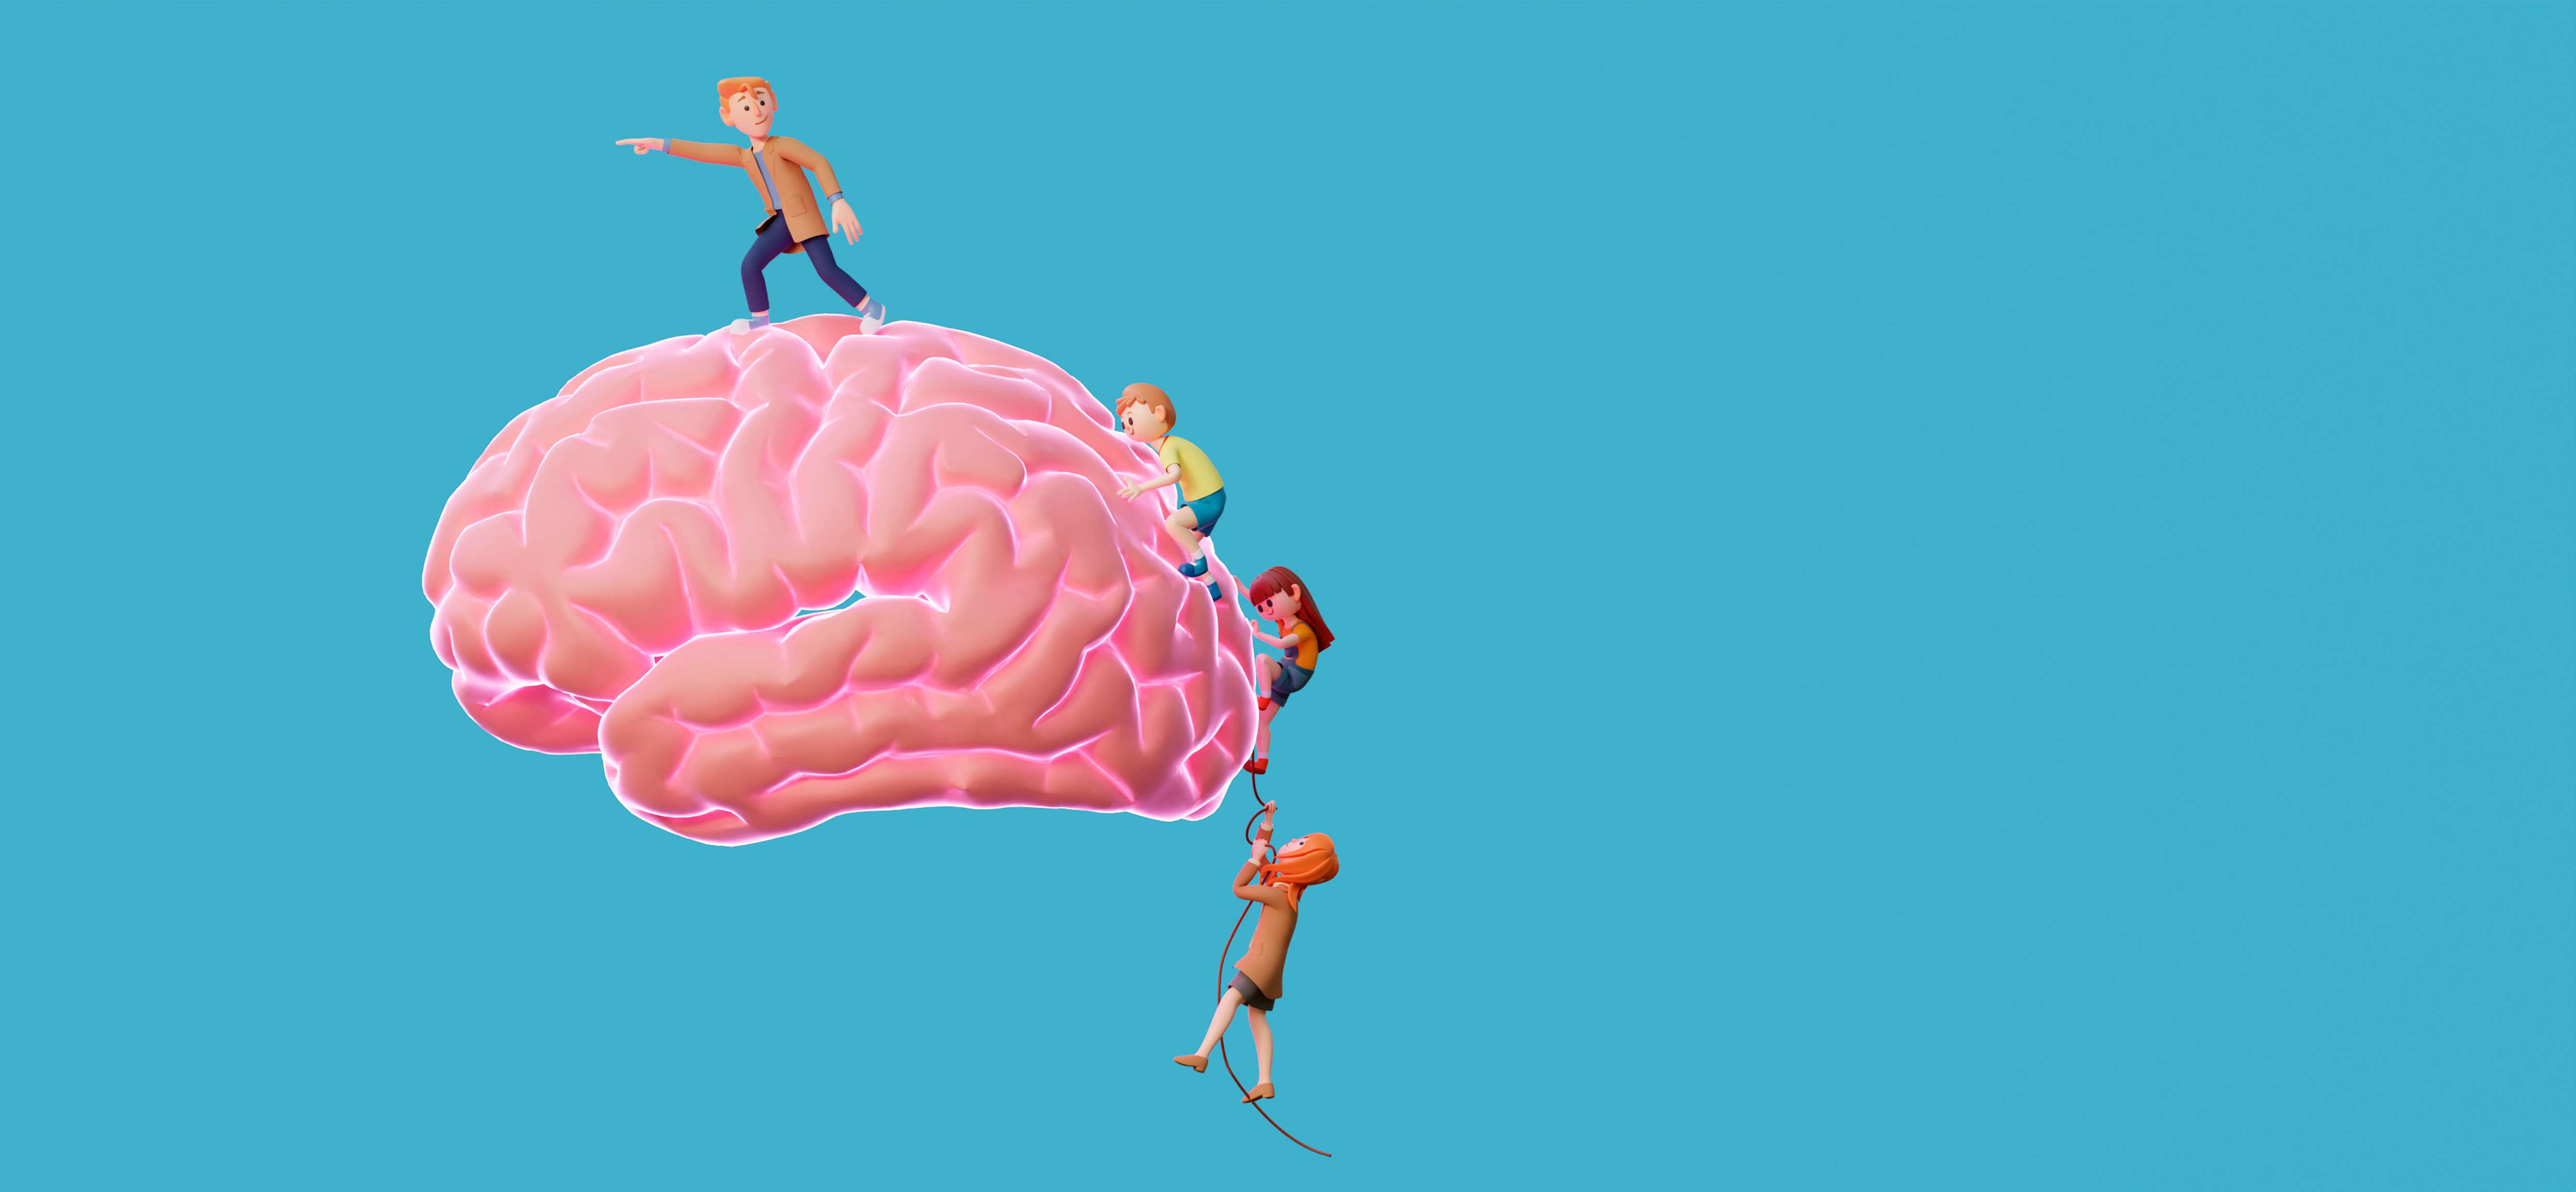 image  de trois enfants en escalade sur un cerveau rose